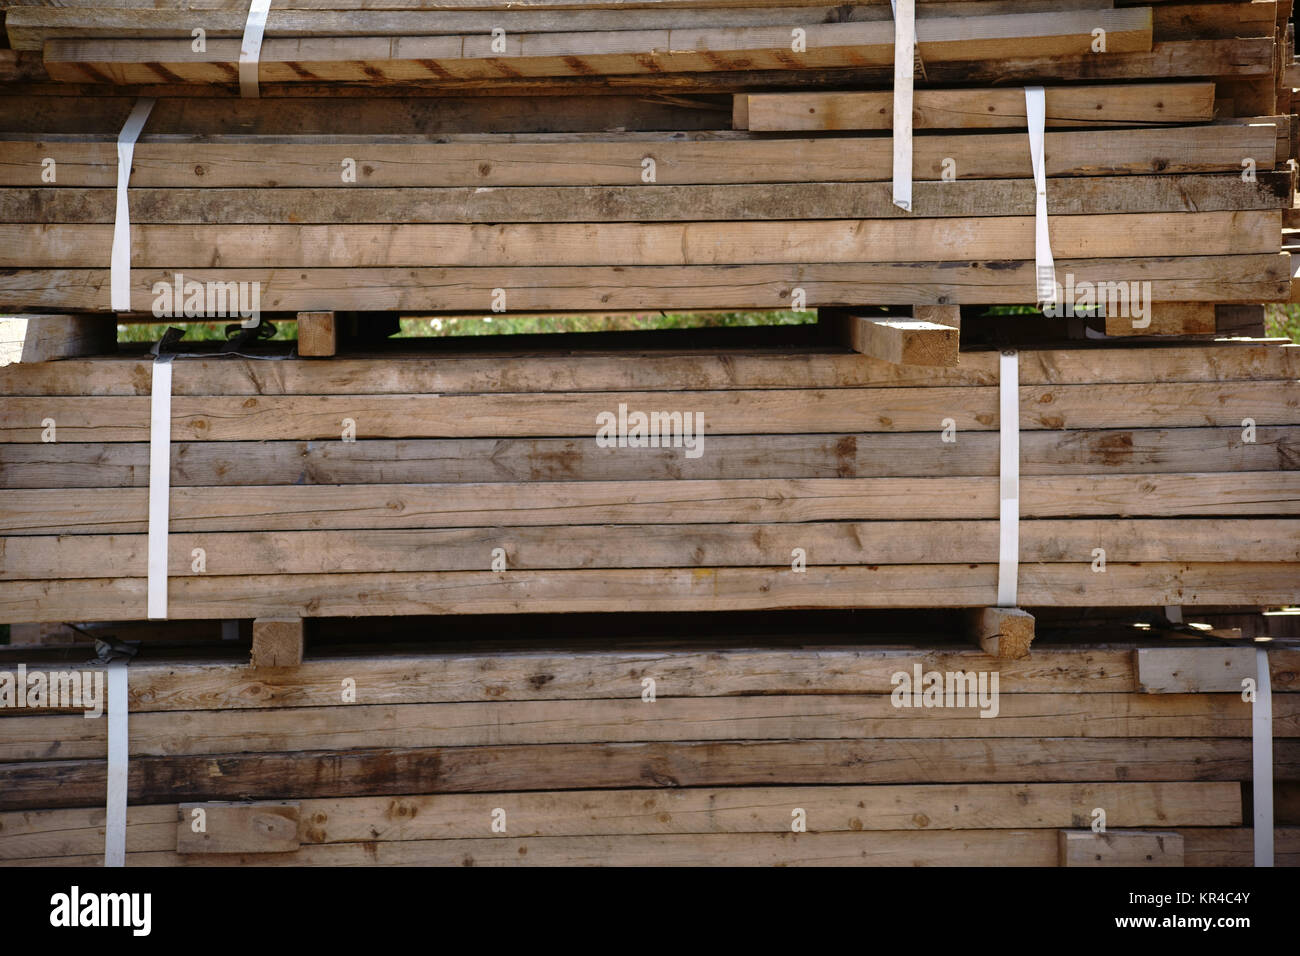 Ein Stapel von zusammengebundenen Holzbrettern auf einer Baustelle. Stock Photo